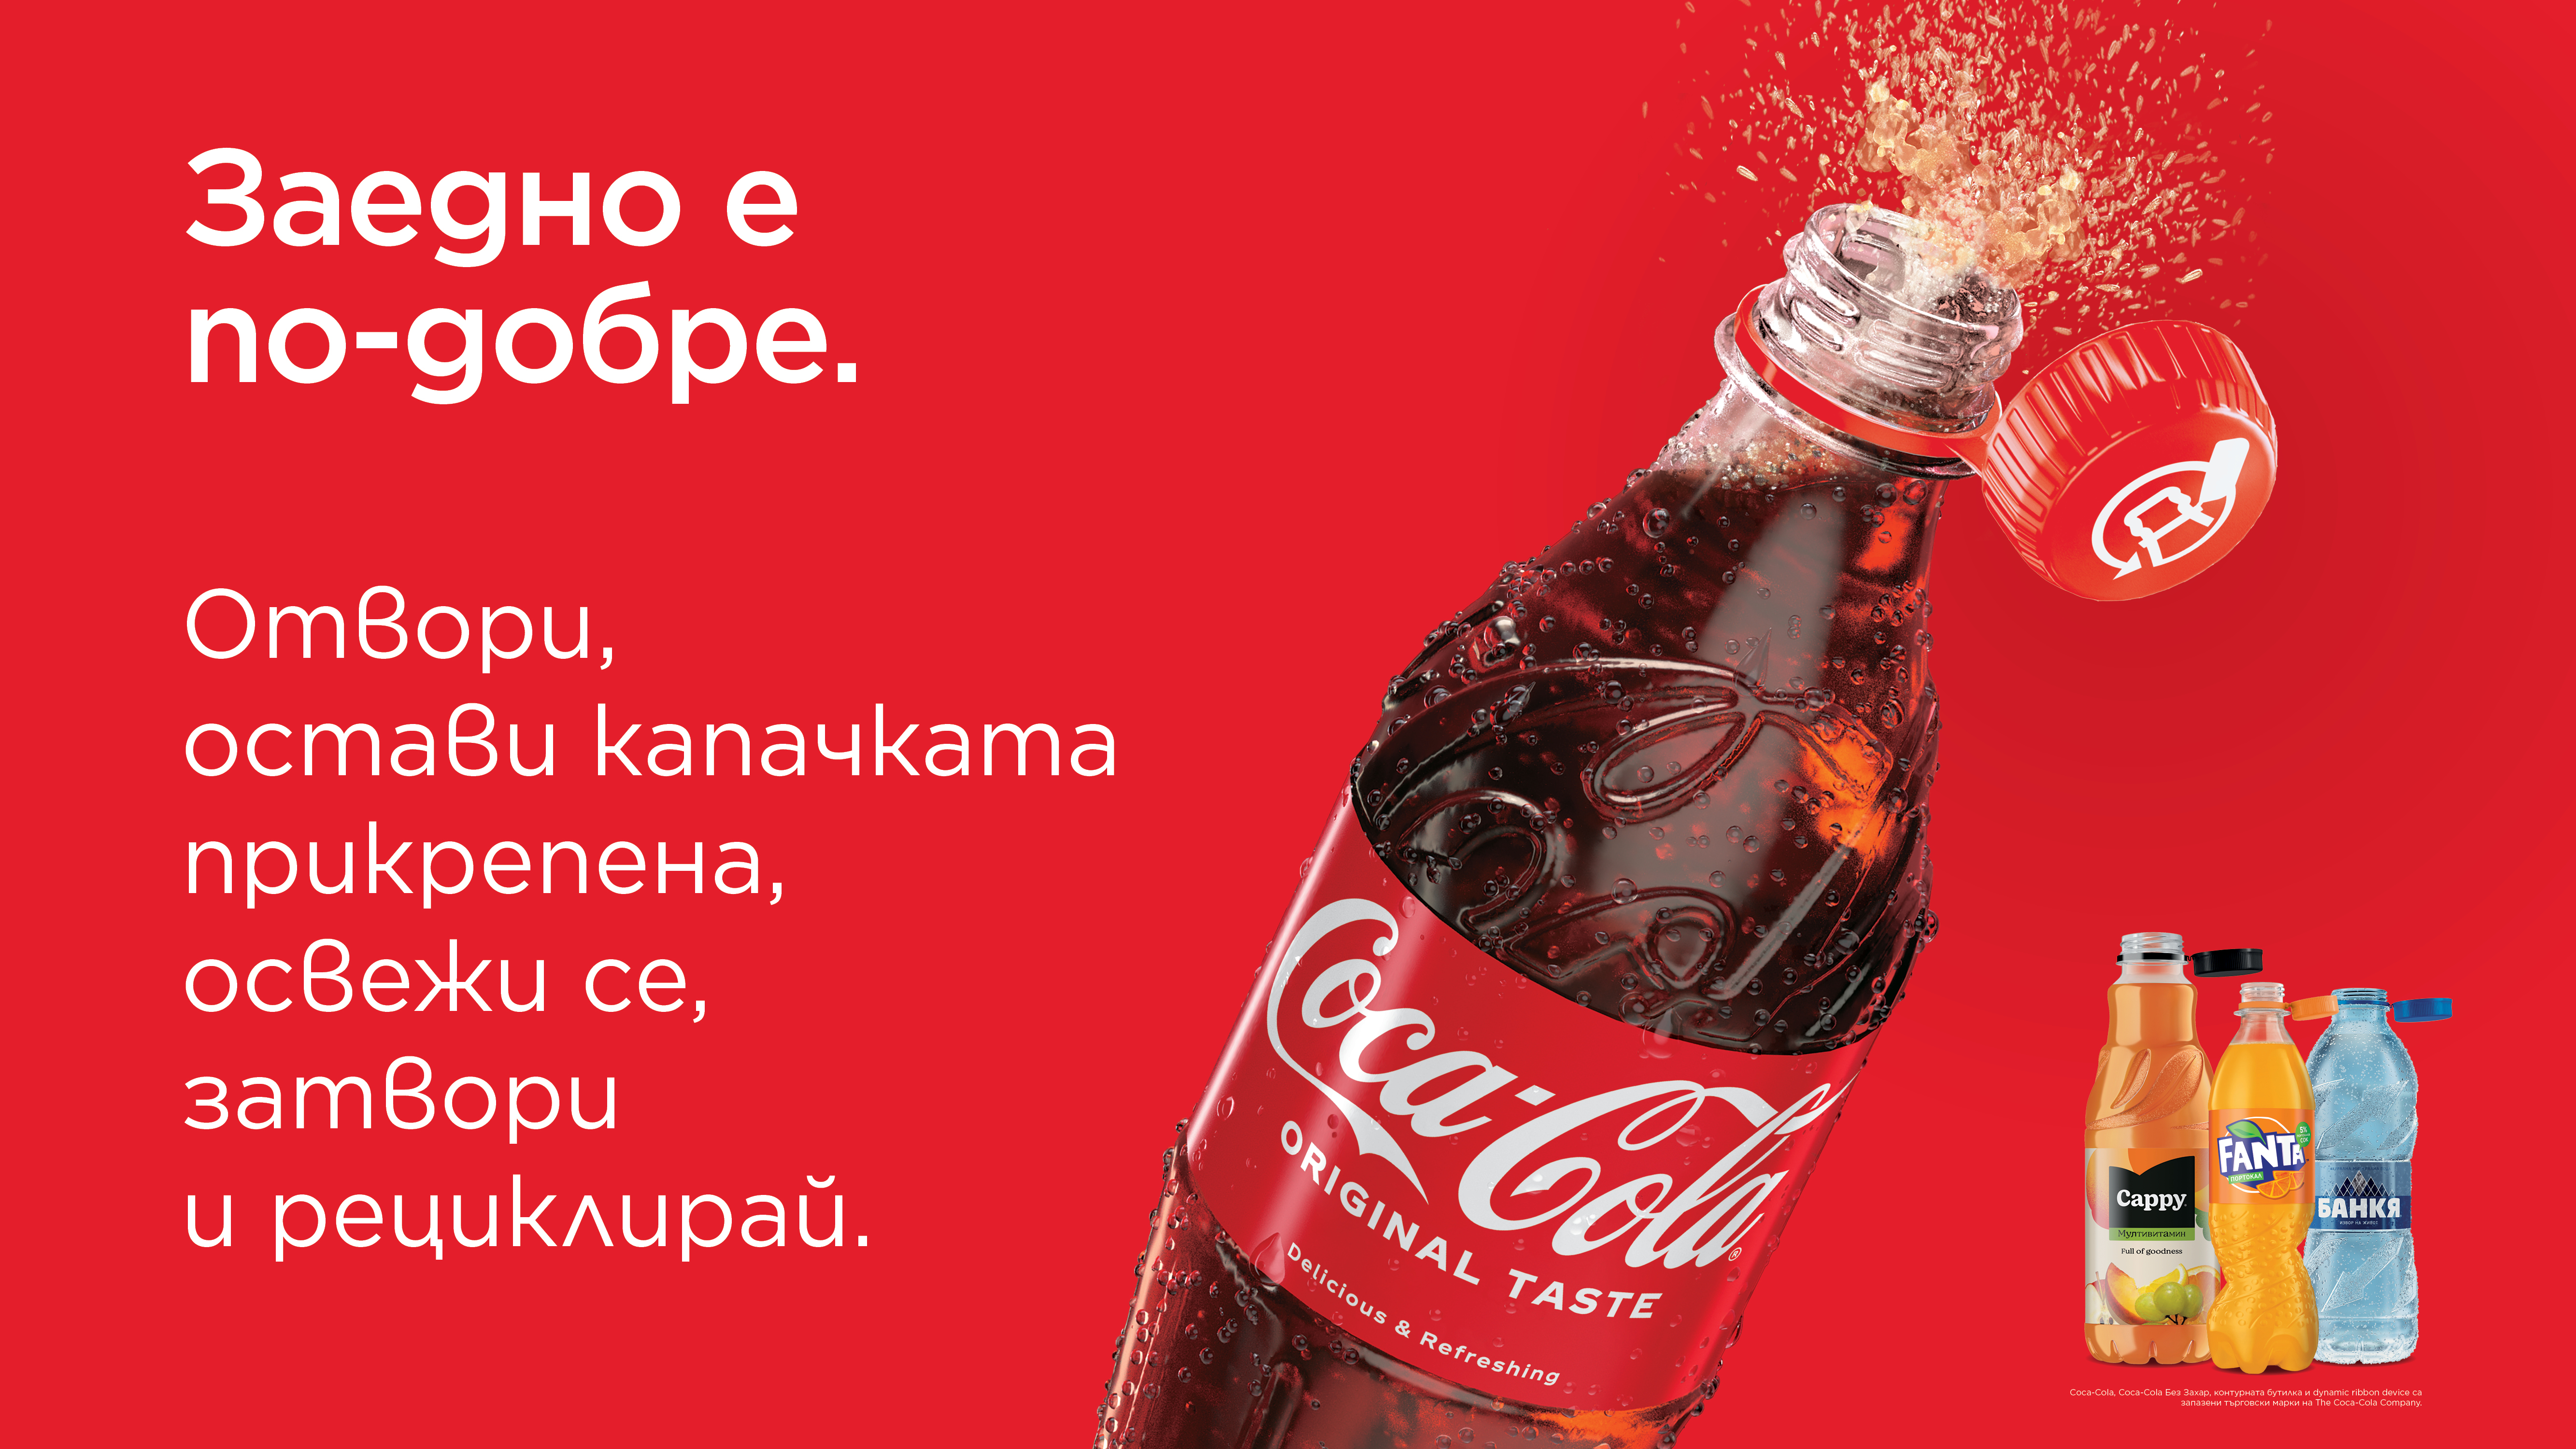 Системата на Кока-Кола в България преминава към пластмасови бутилки с прикрепени капачки, за да стимулира събирането и рециклирането на пластмаса